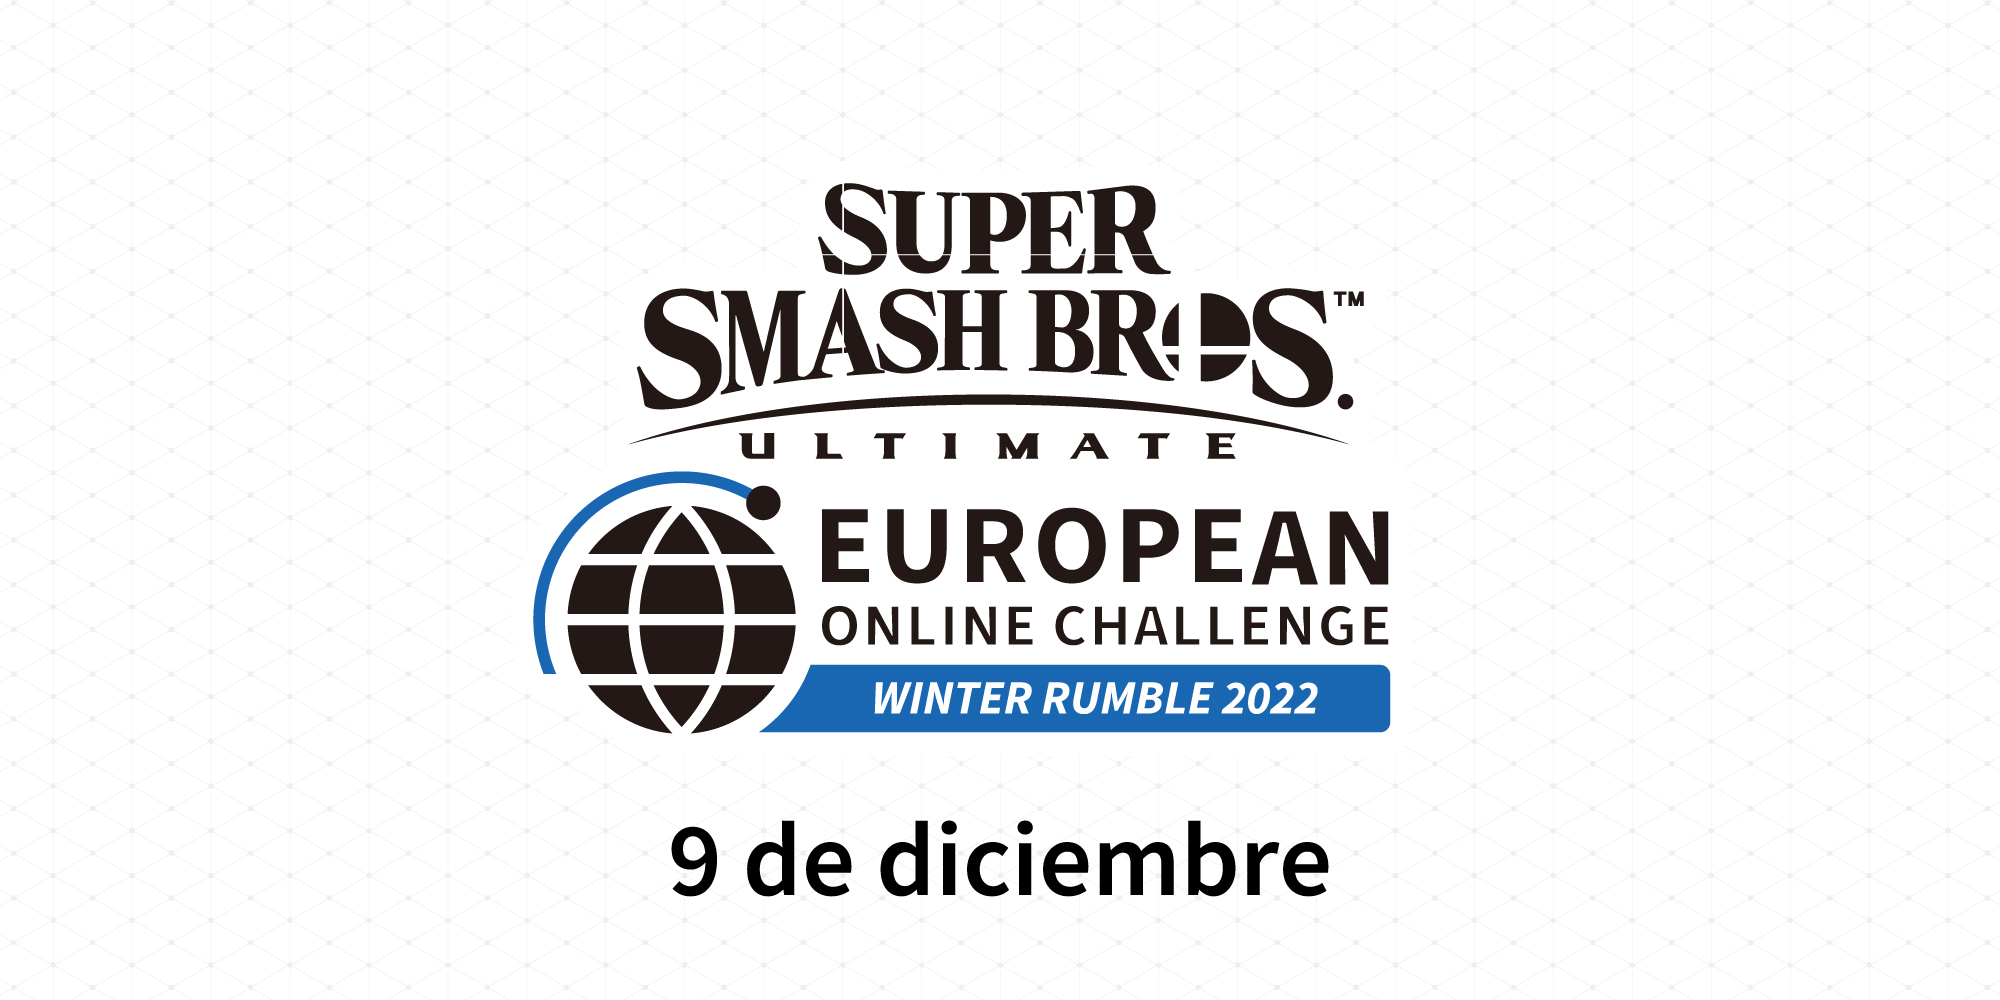 ¡Ya tenemos los resultados del Super Smash Bros. Ultimate European Online Challenge más reciente!